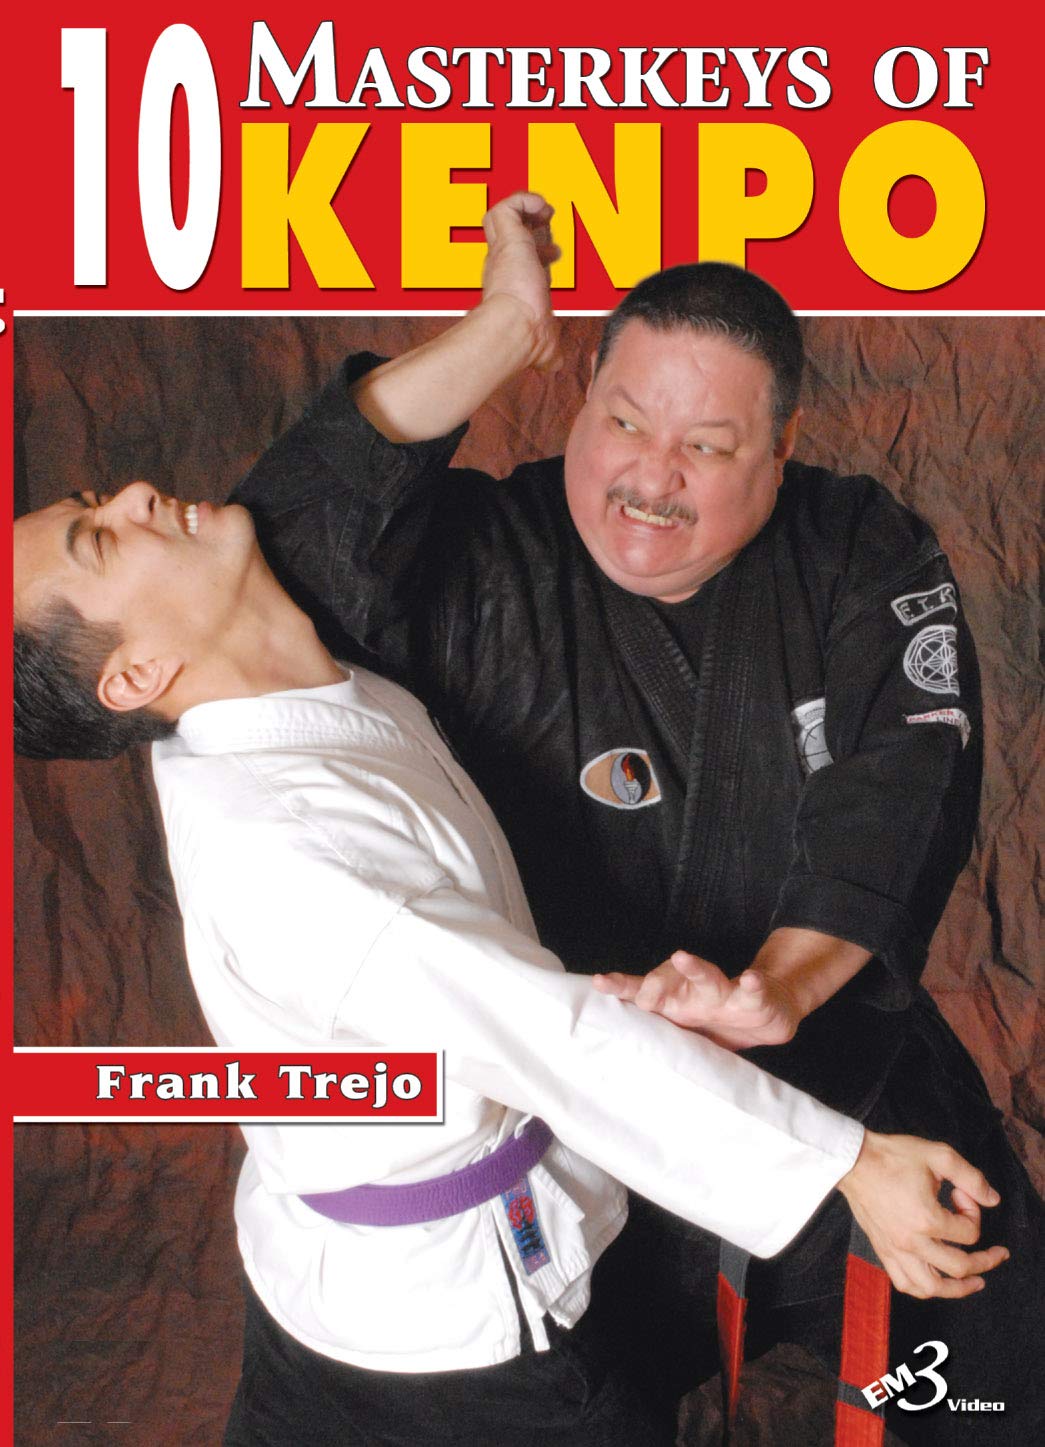 10 Masterkeys of Kempo DVD by Frank Trejo - Budovideos Inc